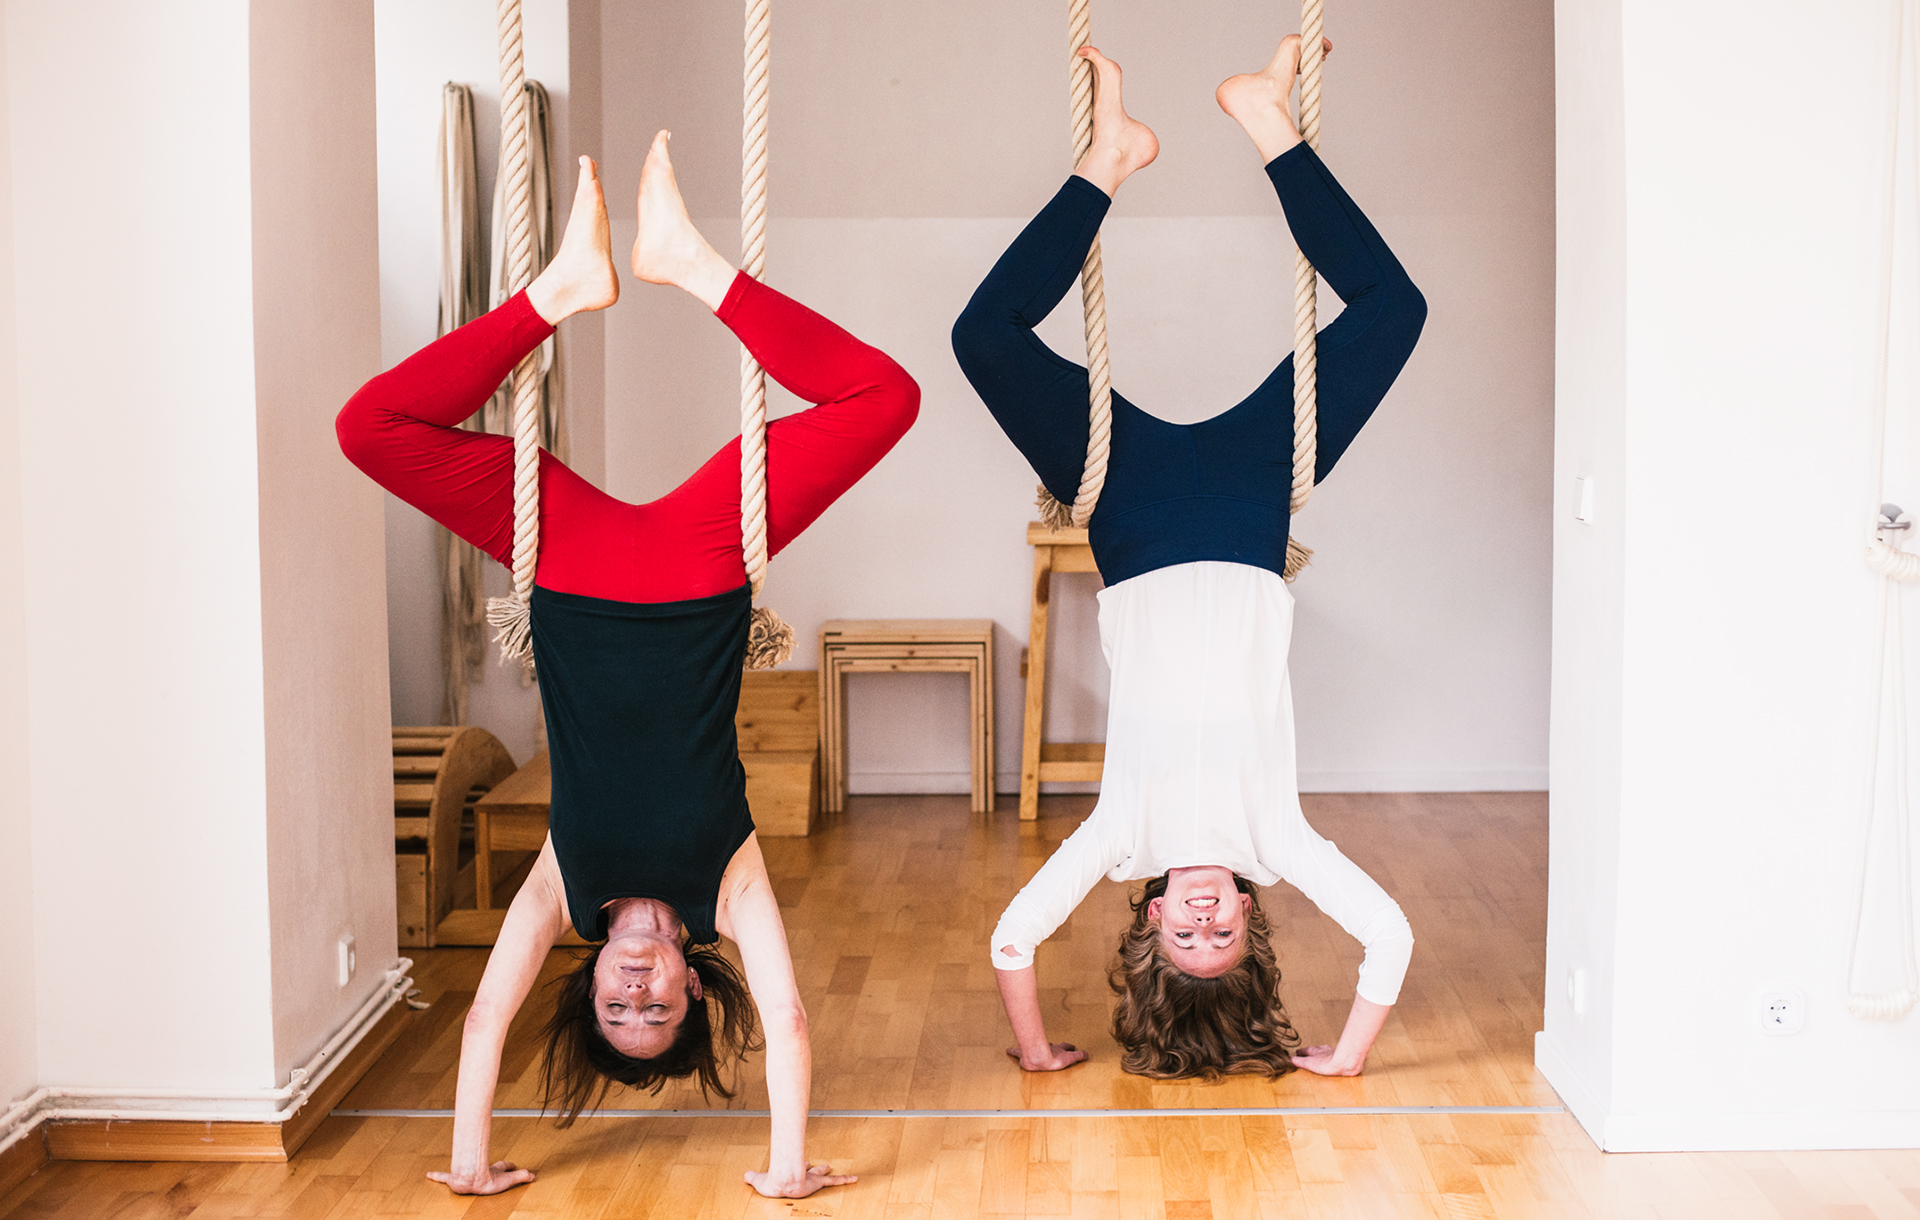 Foodadit founder, Alanna Lawley and Elizabeth Smullens Brass - Iyengar Yoga Teacher in yoga ropes